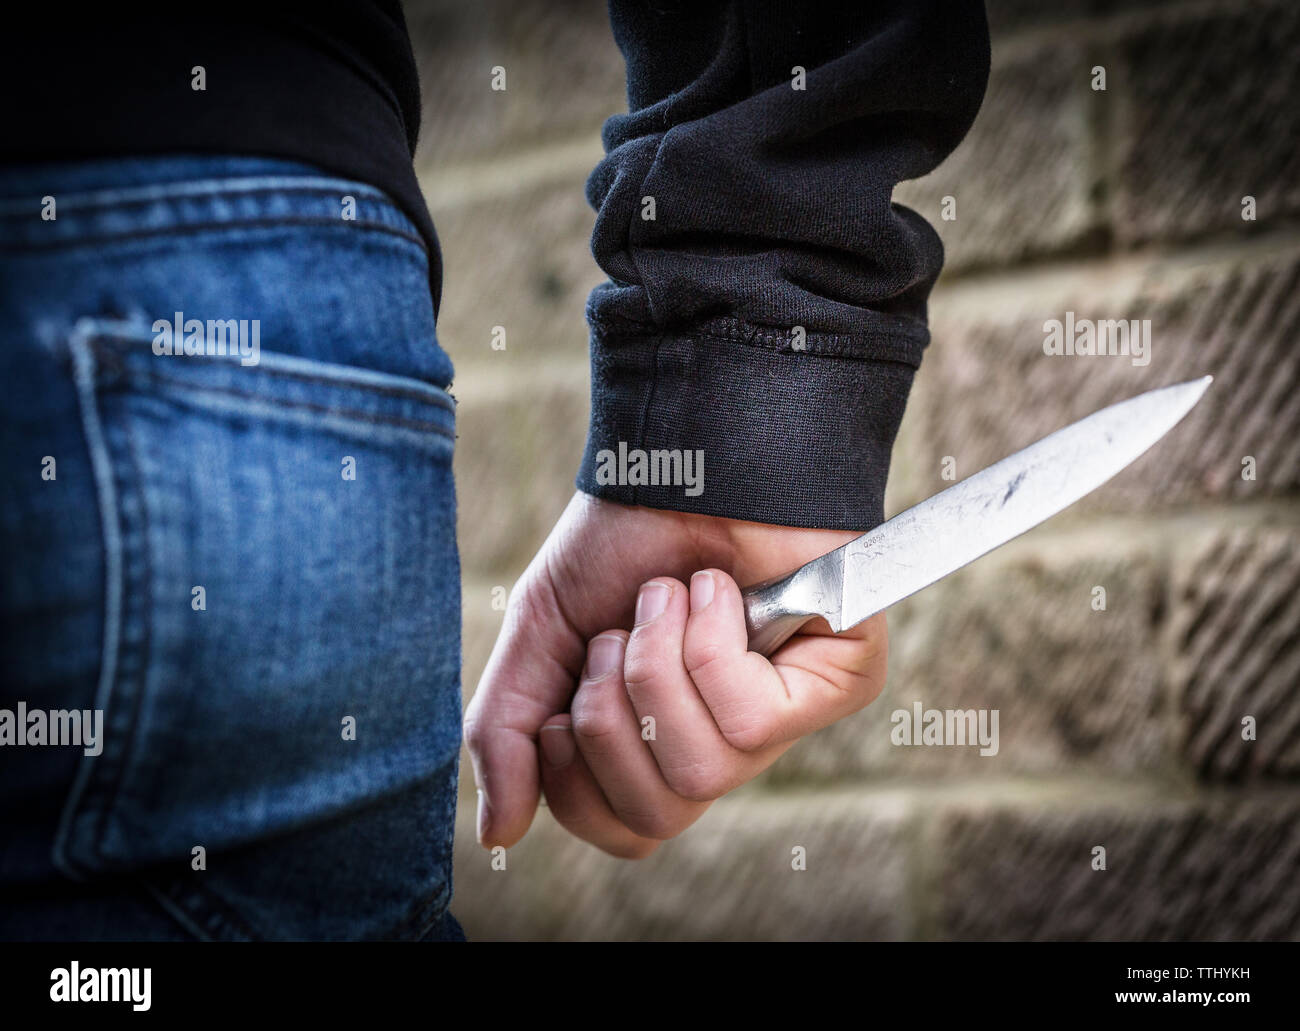 La criminalité couteau, adolescent dans une culotte, transportant un couteau dans la rue au Royaume-Uni Banque D'Images